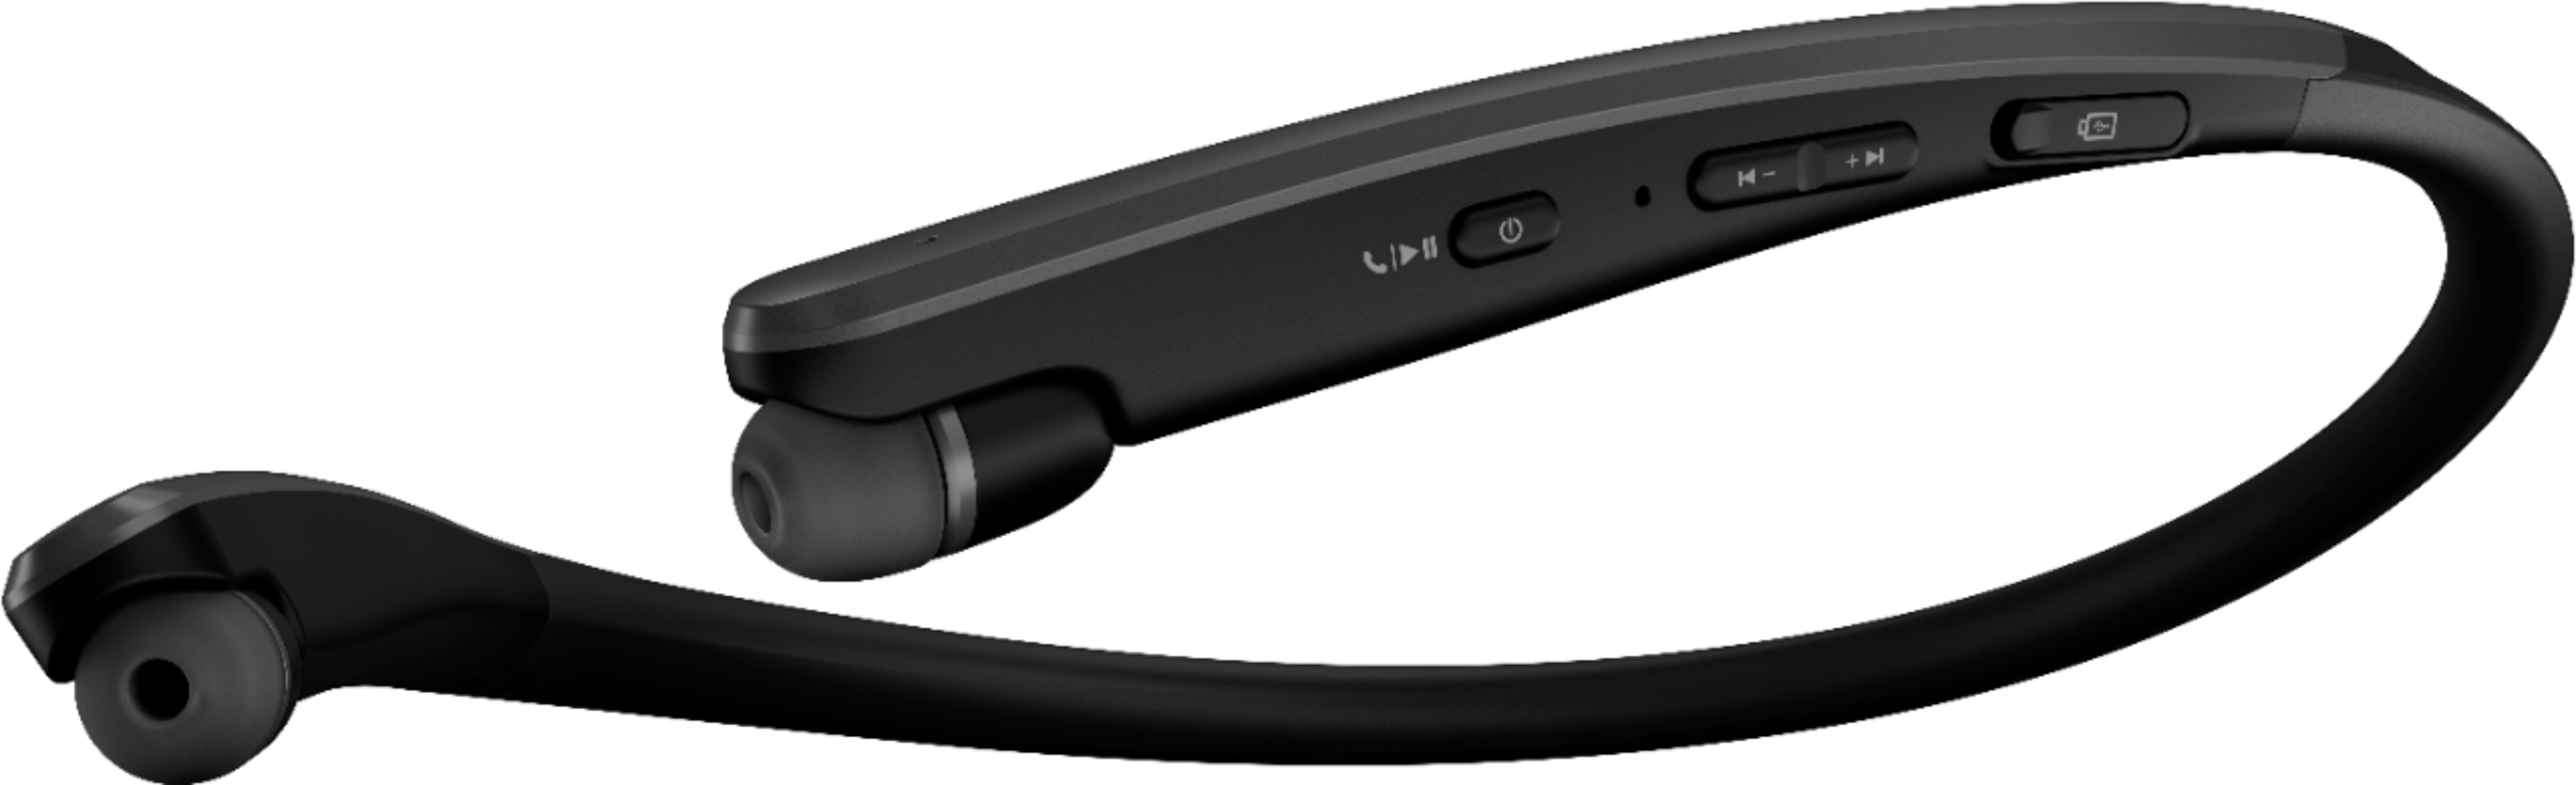 Best Buy: LG TONE Flex HBS-XL7 Wireless In-Ear Headphones Black LG